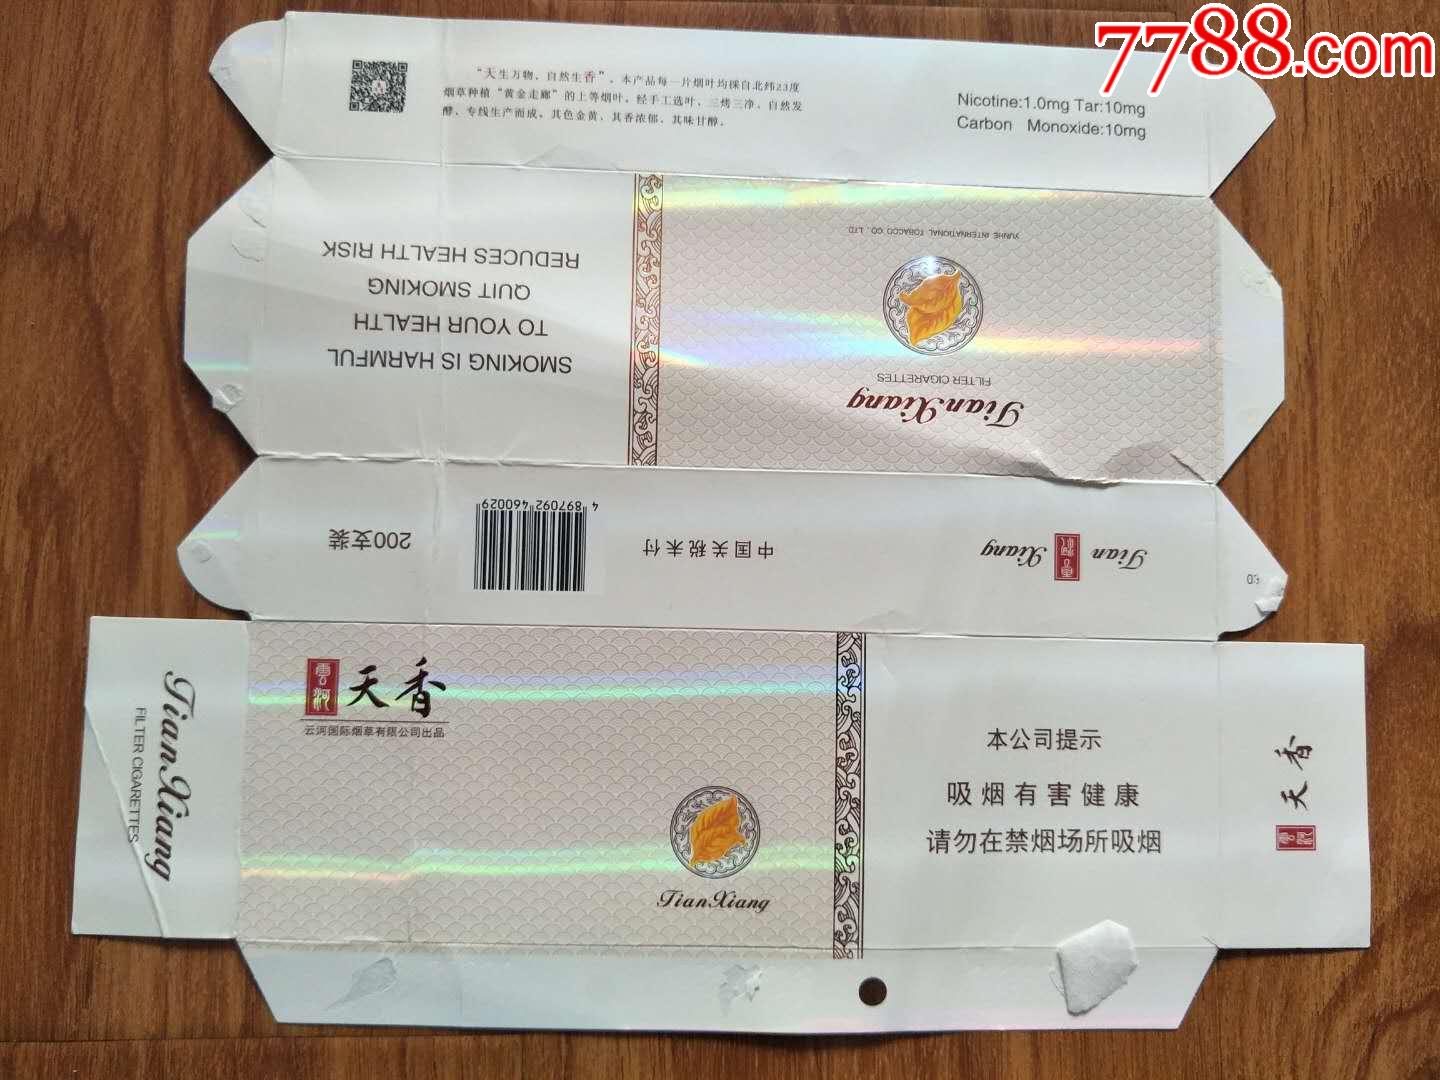 云河天香(460029焦油10mg)-云河国际烟草有限公司_价格1.